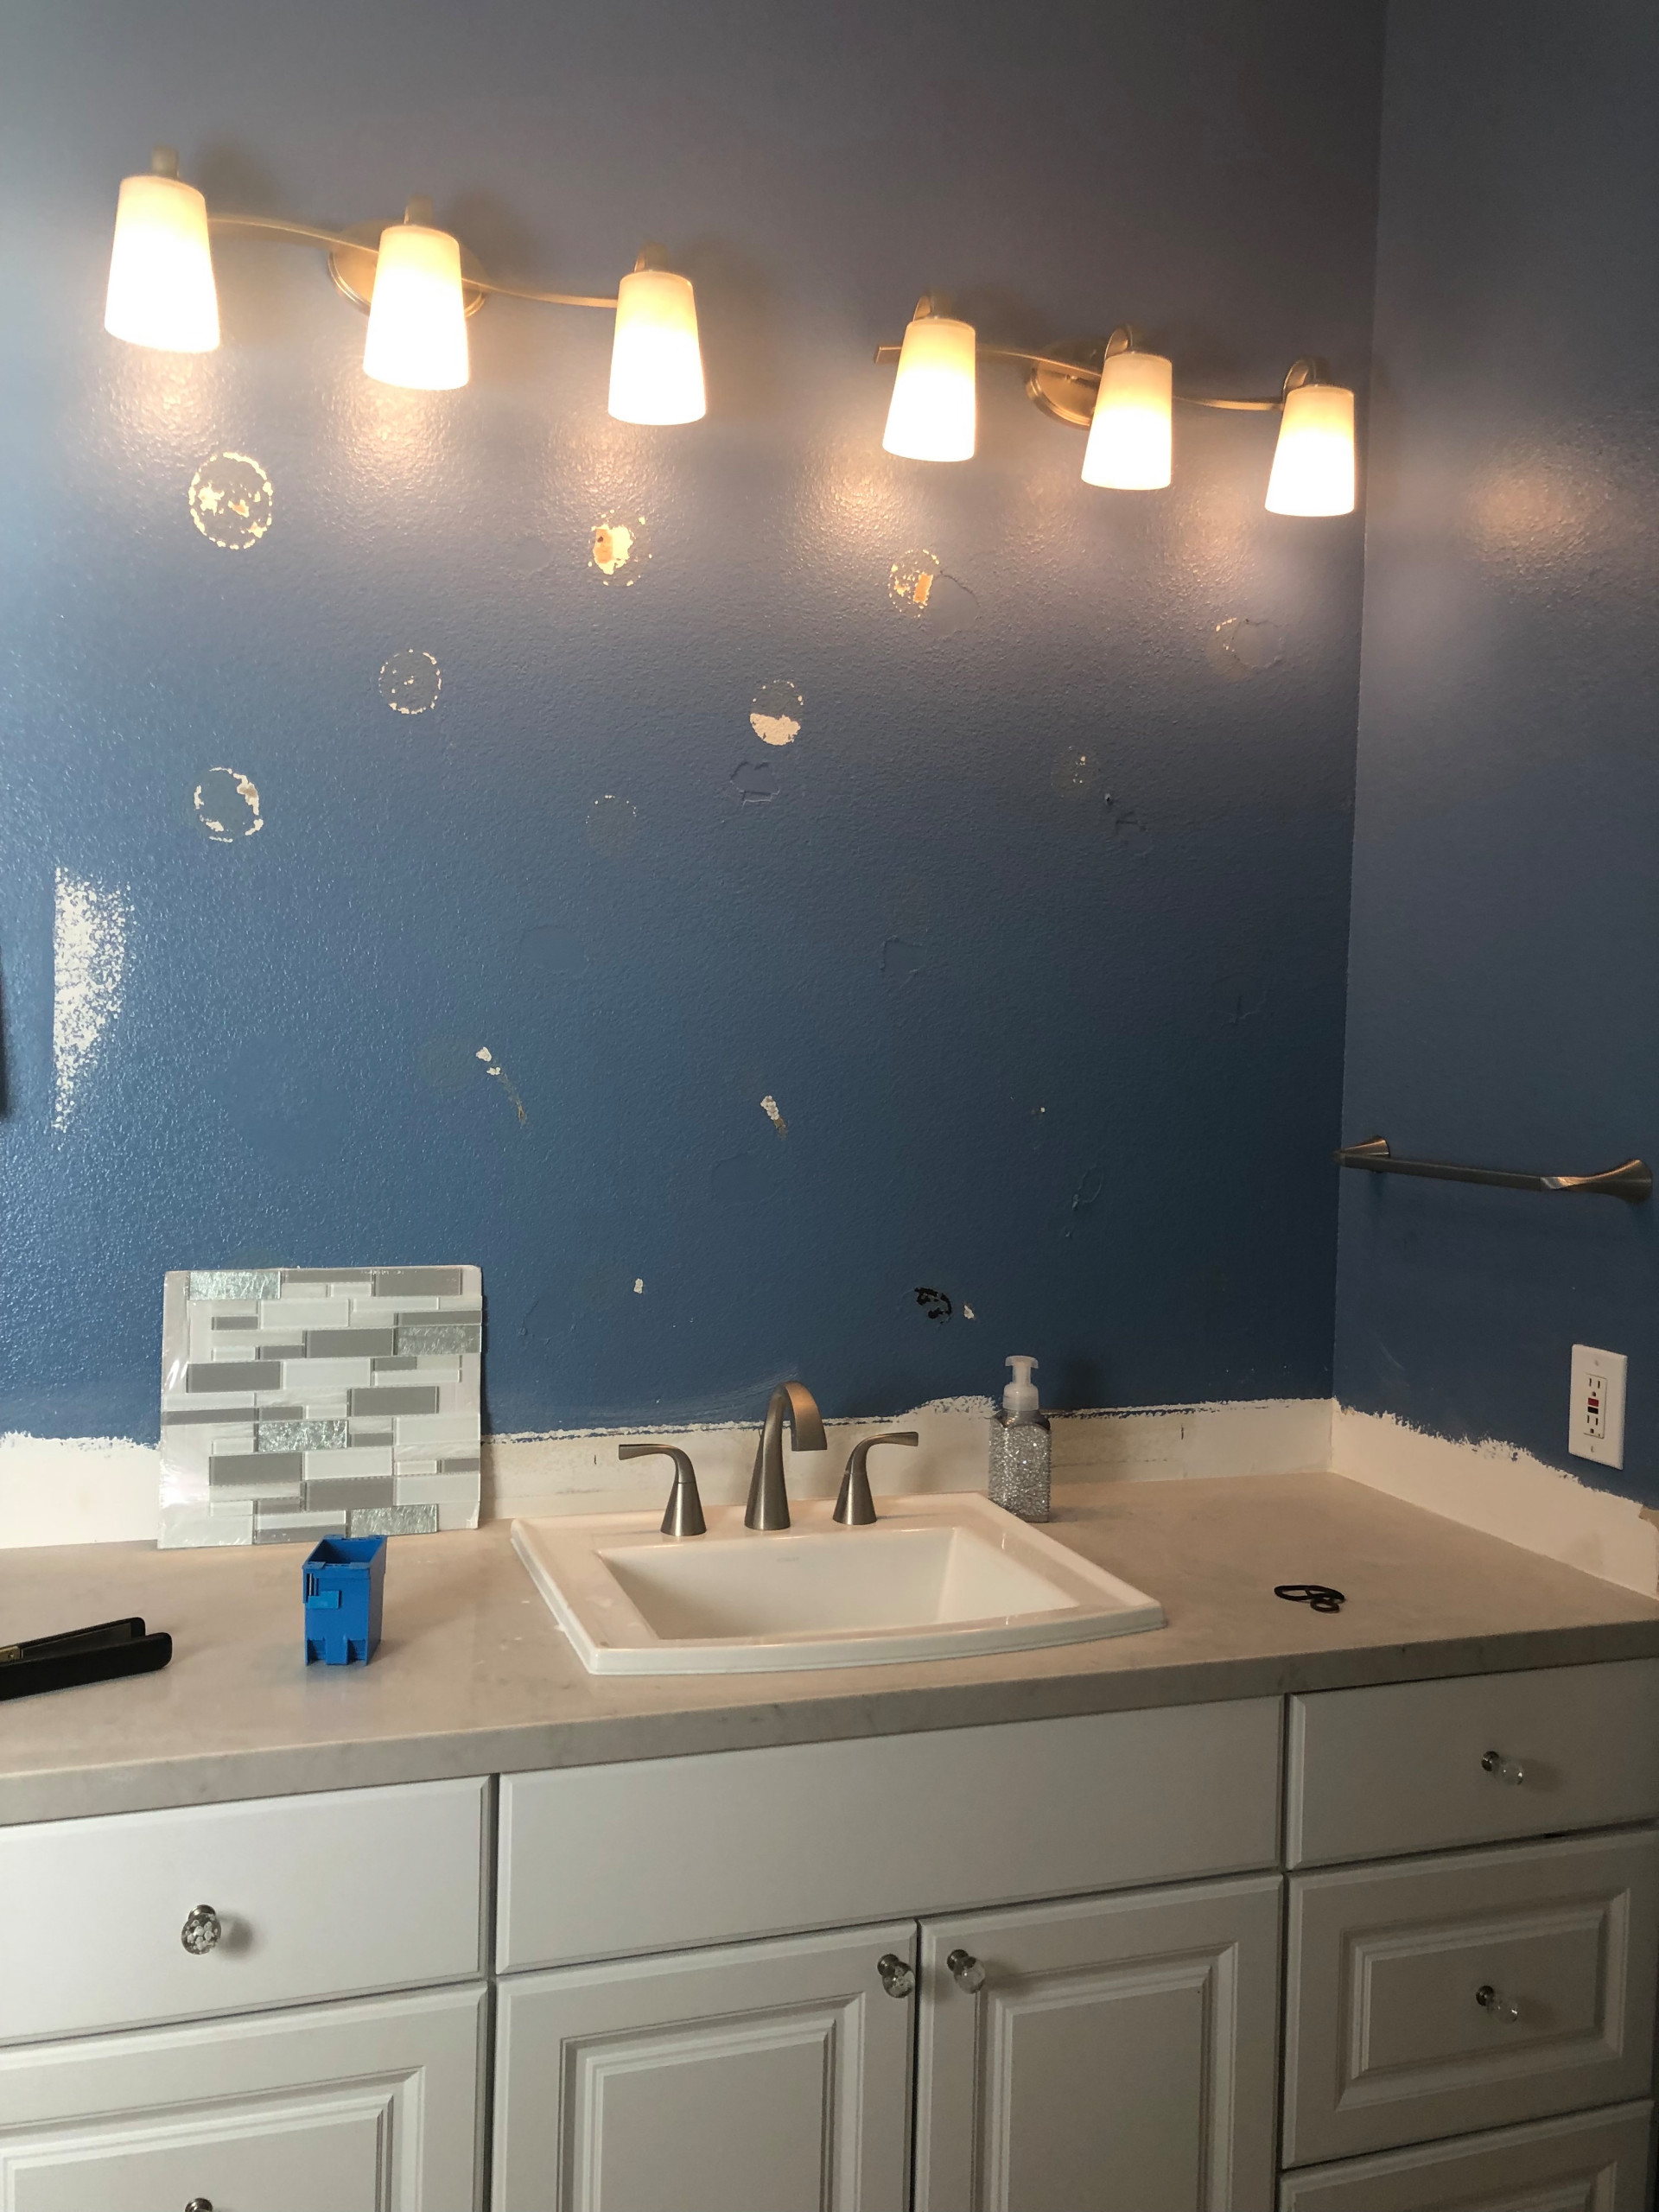 Summerlin Bathroom Renovations